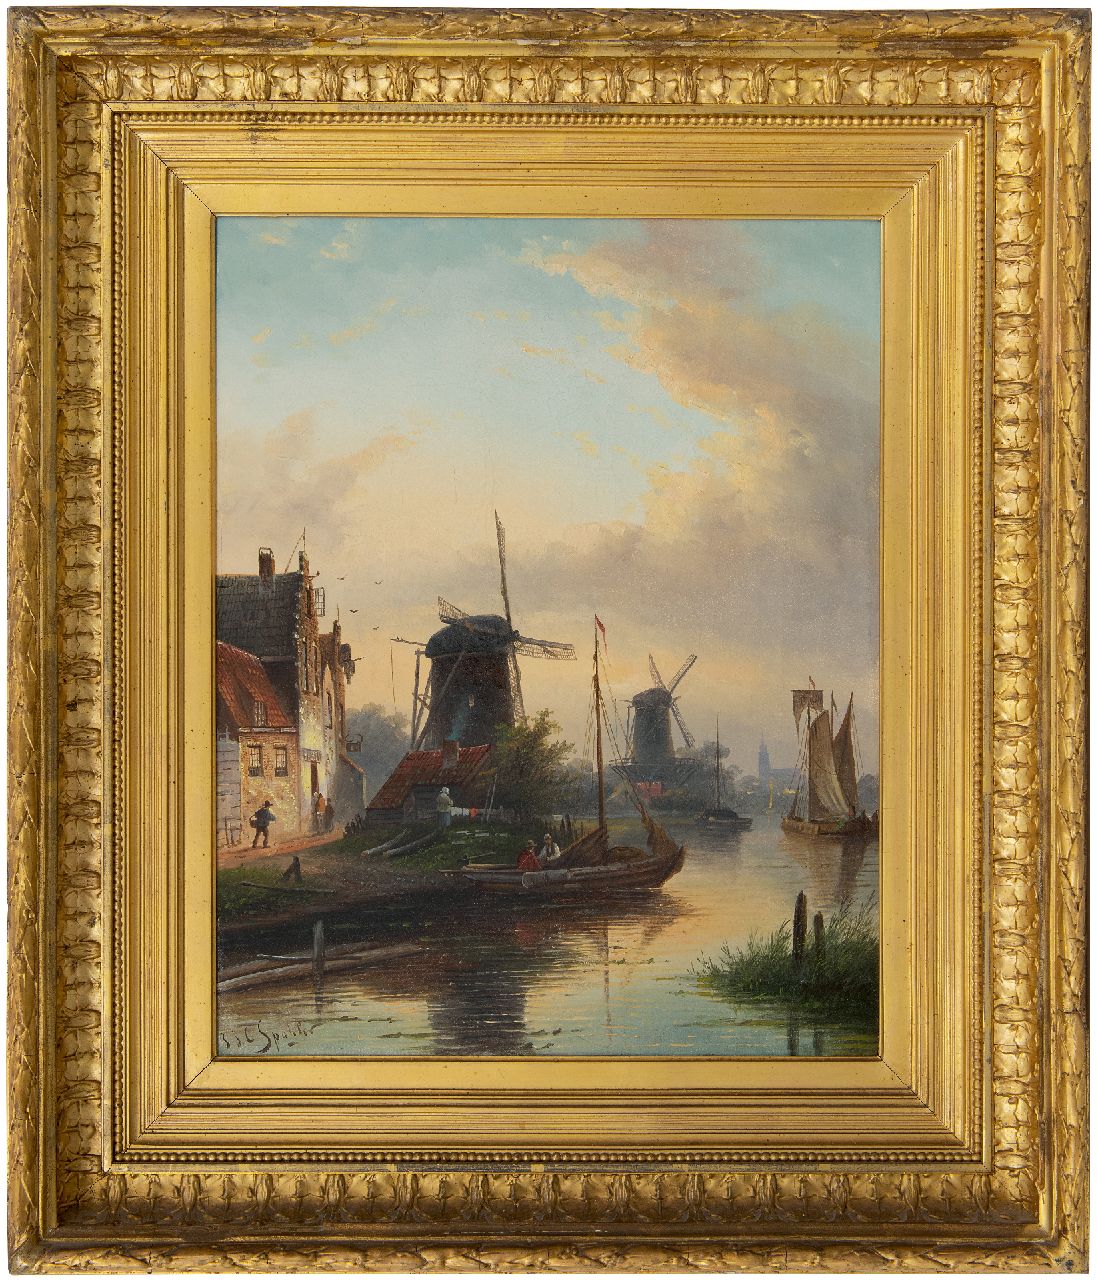 Spohler J.J.C.  | Jacob Jan Coenraad Spohler, A river landscape in summer, oil on canvas 44.5 x 35.5 cm, signed l.l.